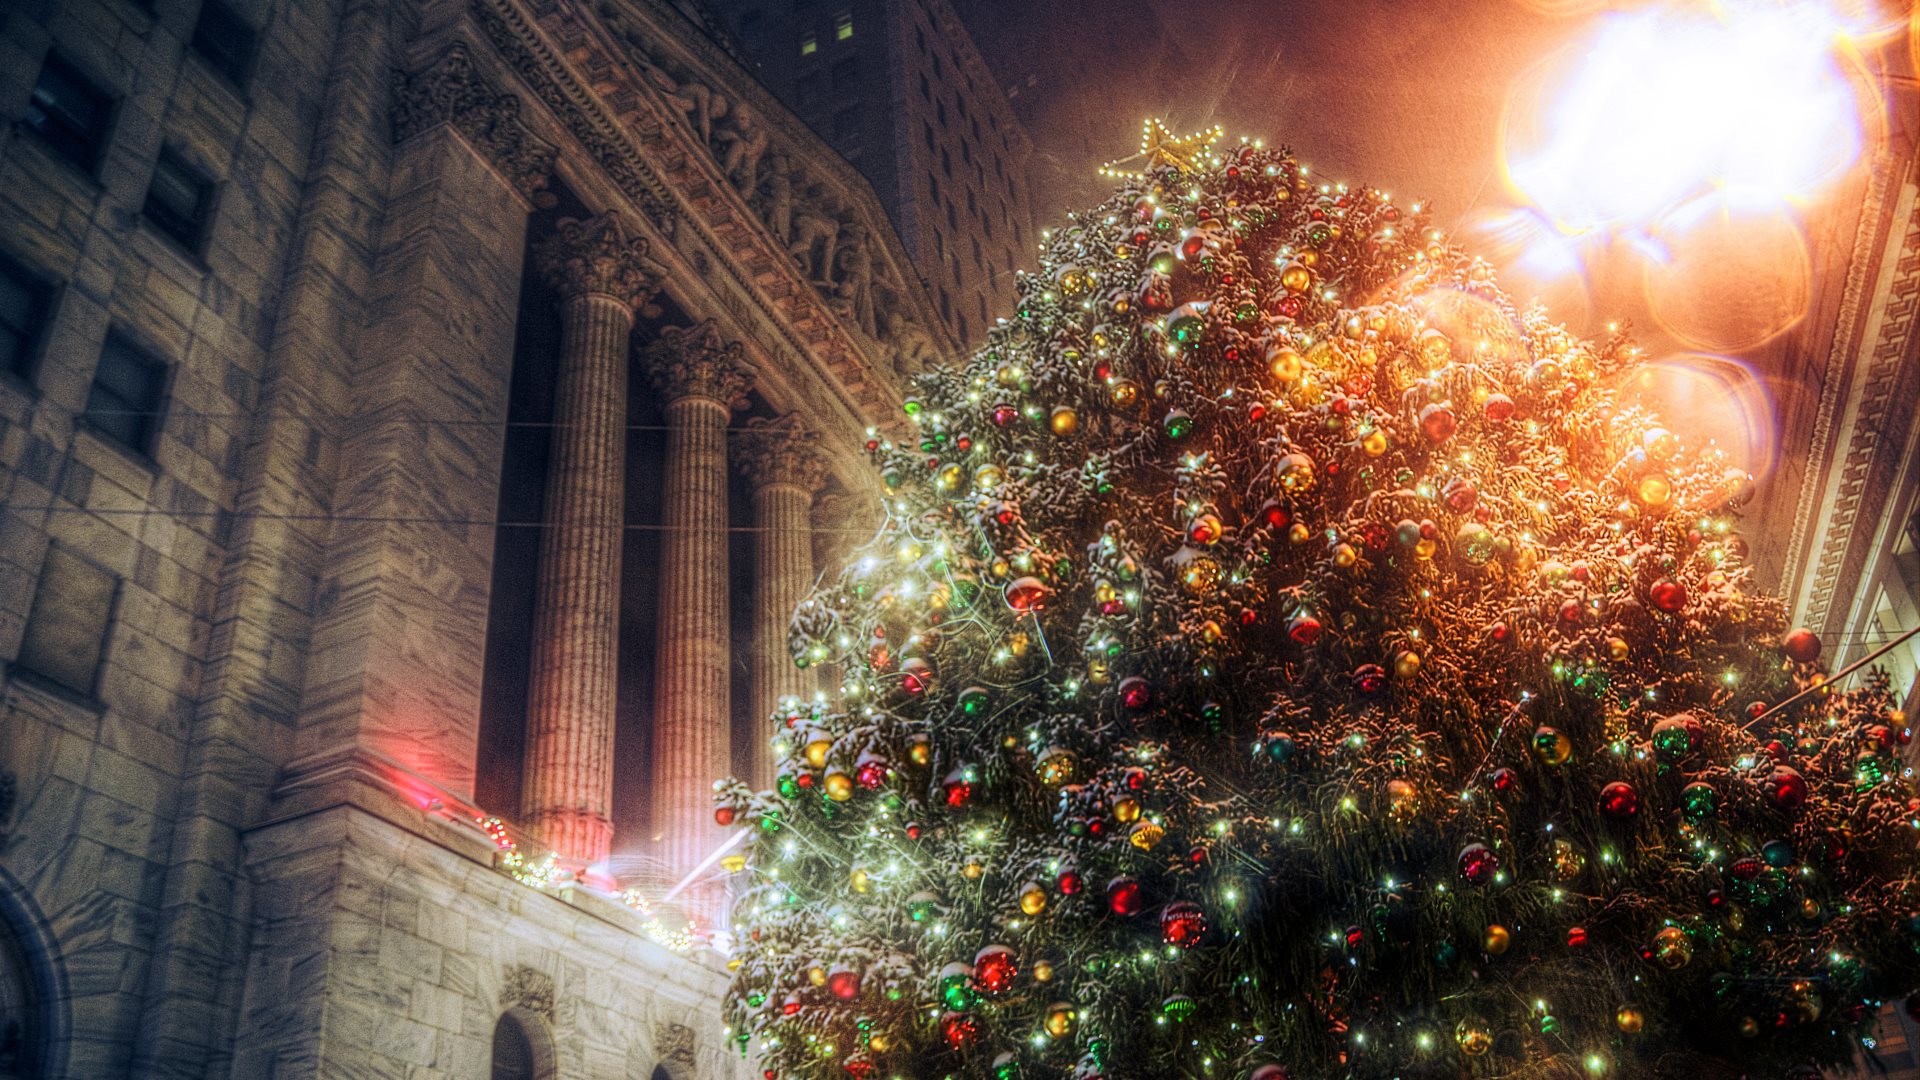 navidad fondos de pantalla hd widescreen,árbol de navidad,árbol,decoración navideña,luces de navidad,ligero